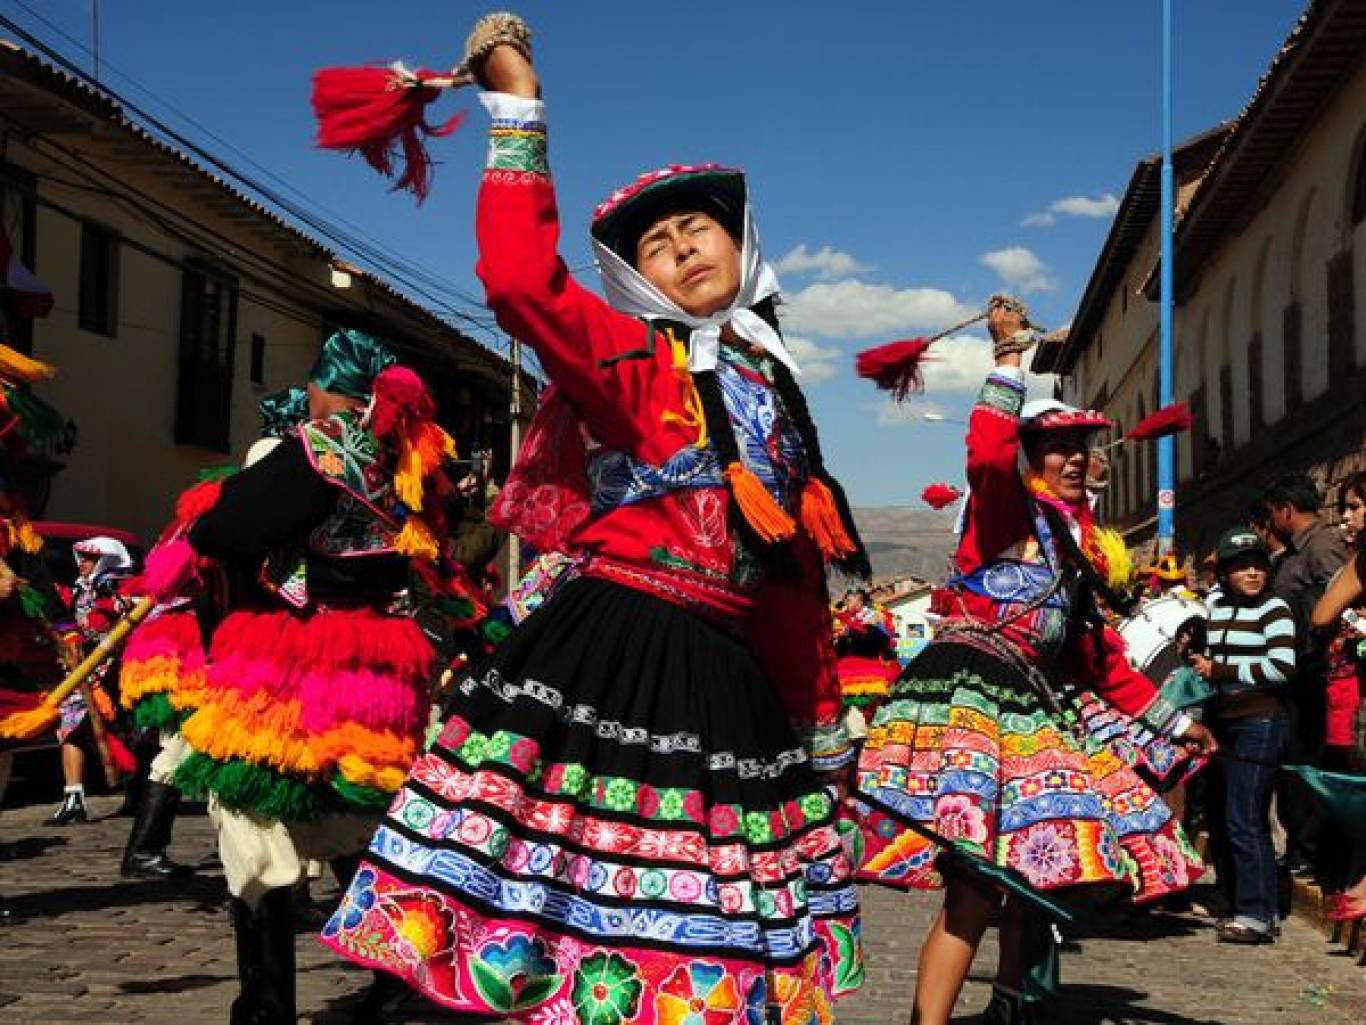 Культура и быт южной америки. Национальные костюмы народов Латинской Америки. Национальная одежда чилийцев. Национальный костюм перуанцев. Традиционная одежда кечуанов Перу.